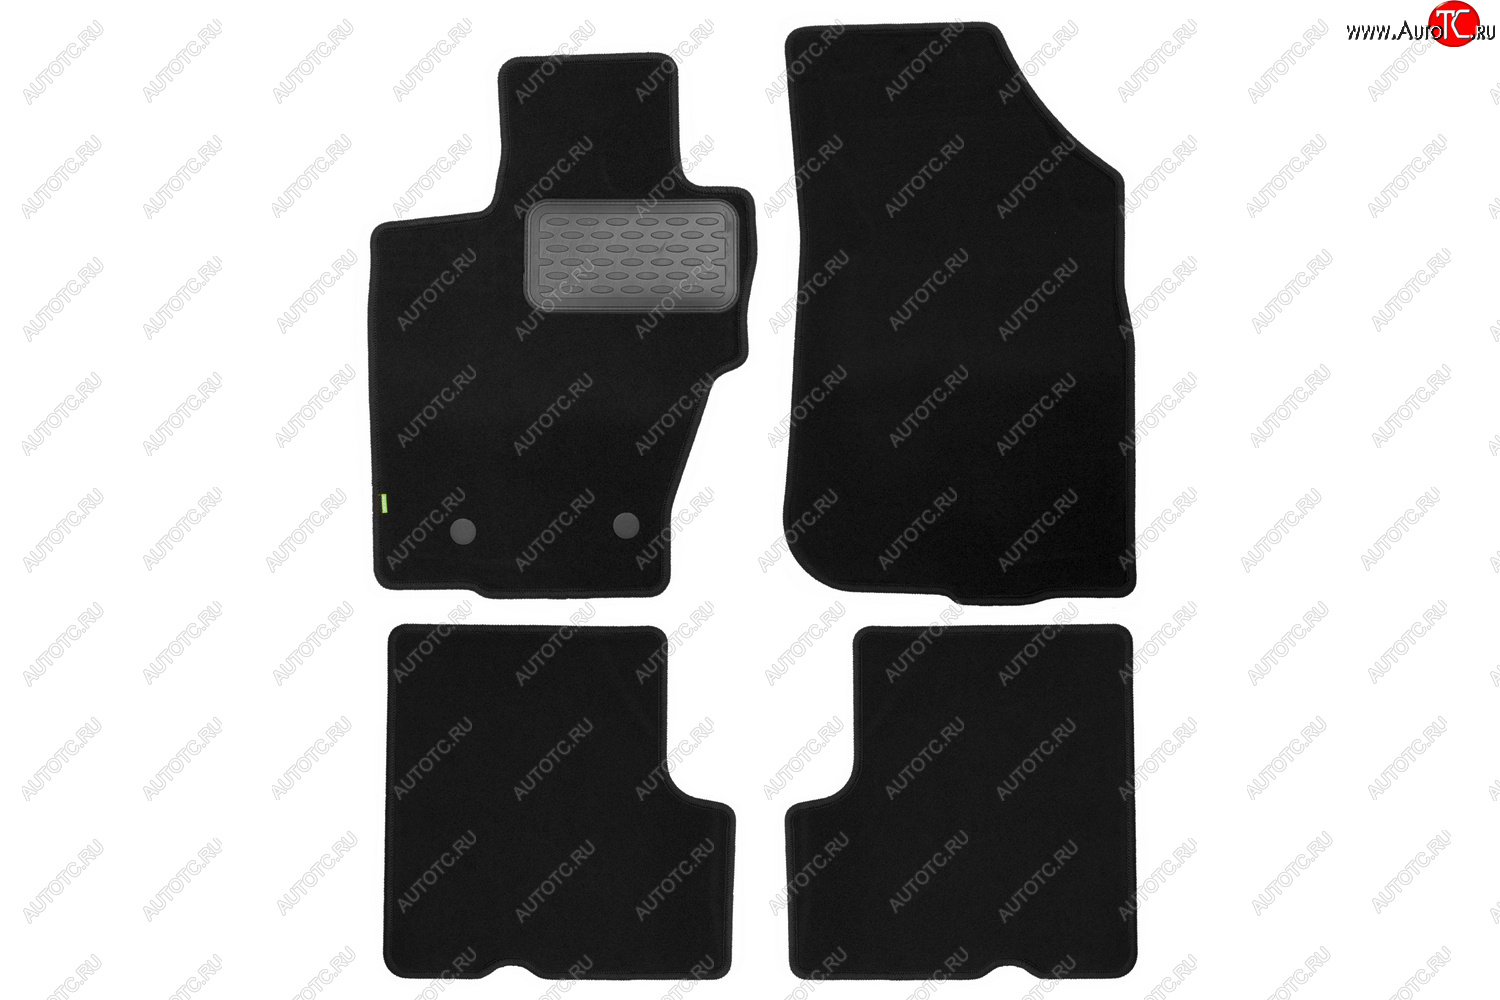 3 789 р. Комплект ковриков в салон (4WD, чёрные, текстиль) Klever Standard  Renault Duster  HS (2010-2015)